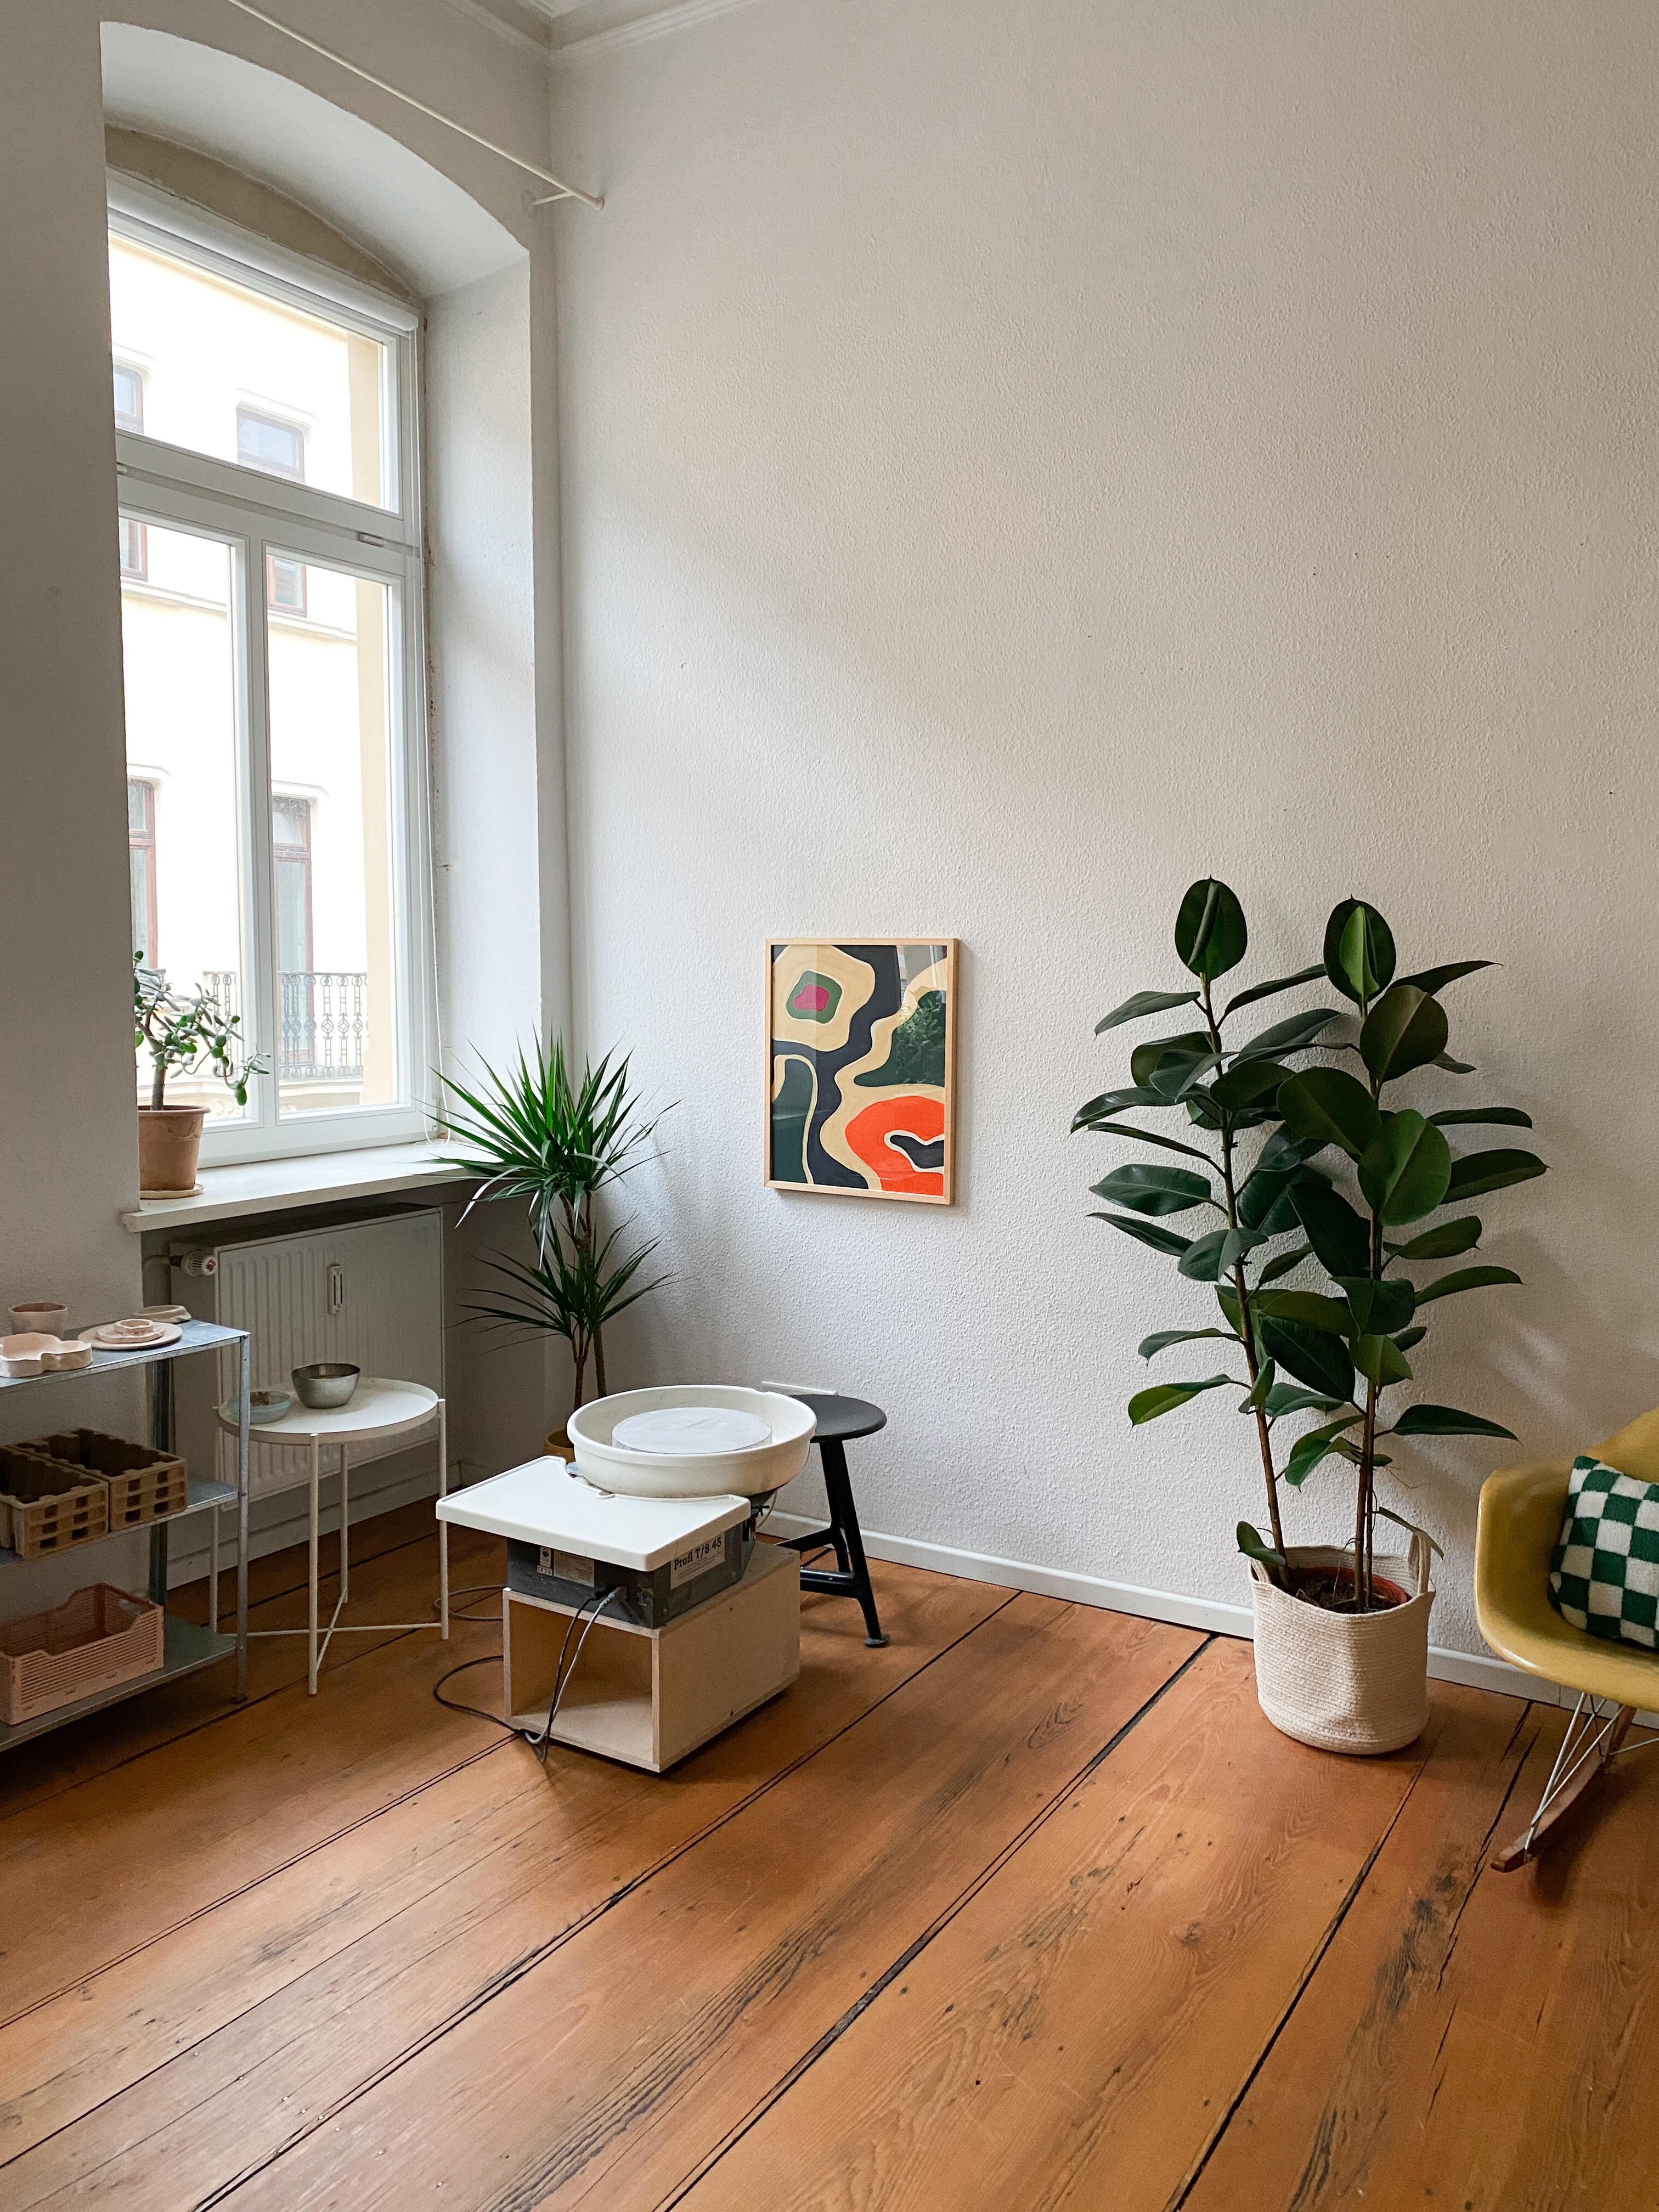 Mein kleines Töpferatelier und mein happy place mitten in meiner Wohnung 🥰 #töpfern #Altbau #Dielenboden #kreativ #interiordesign